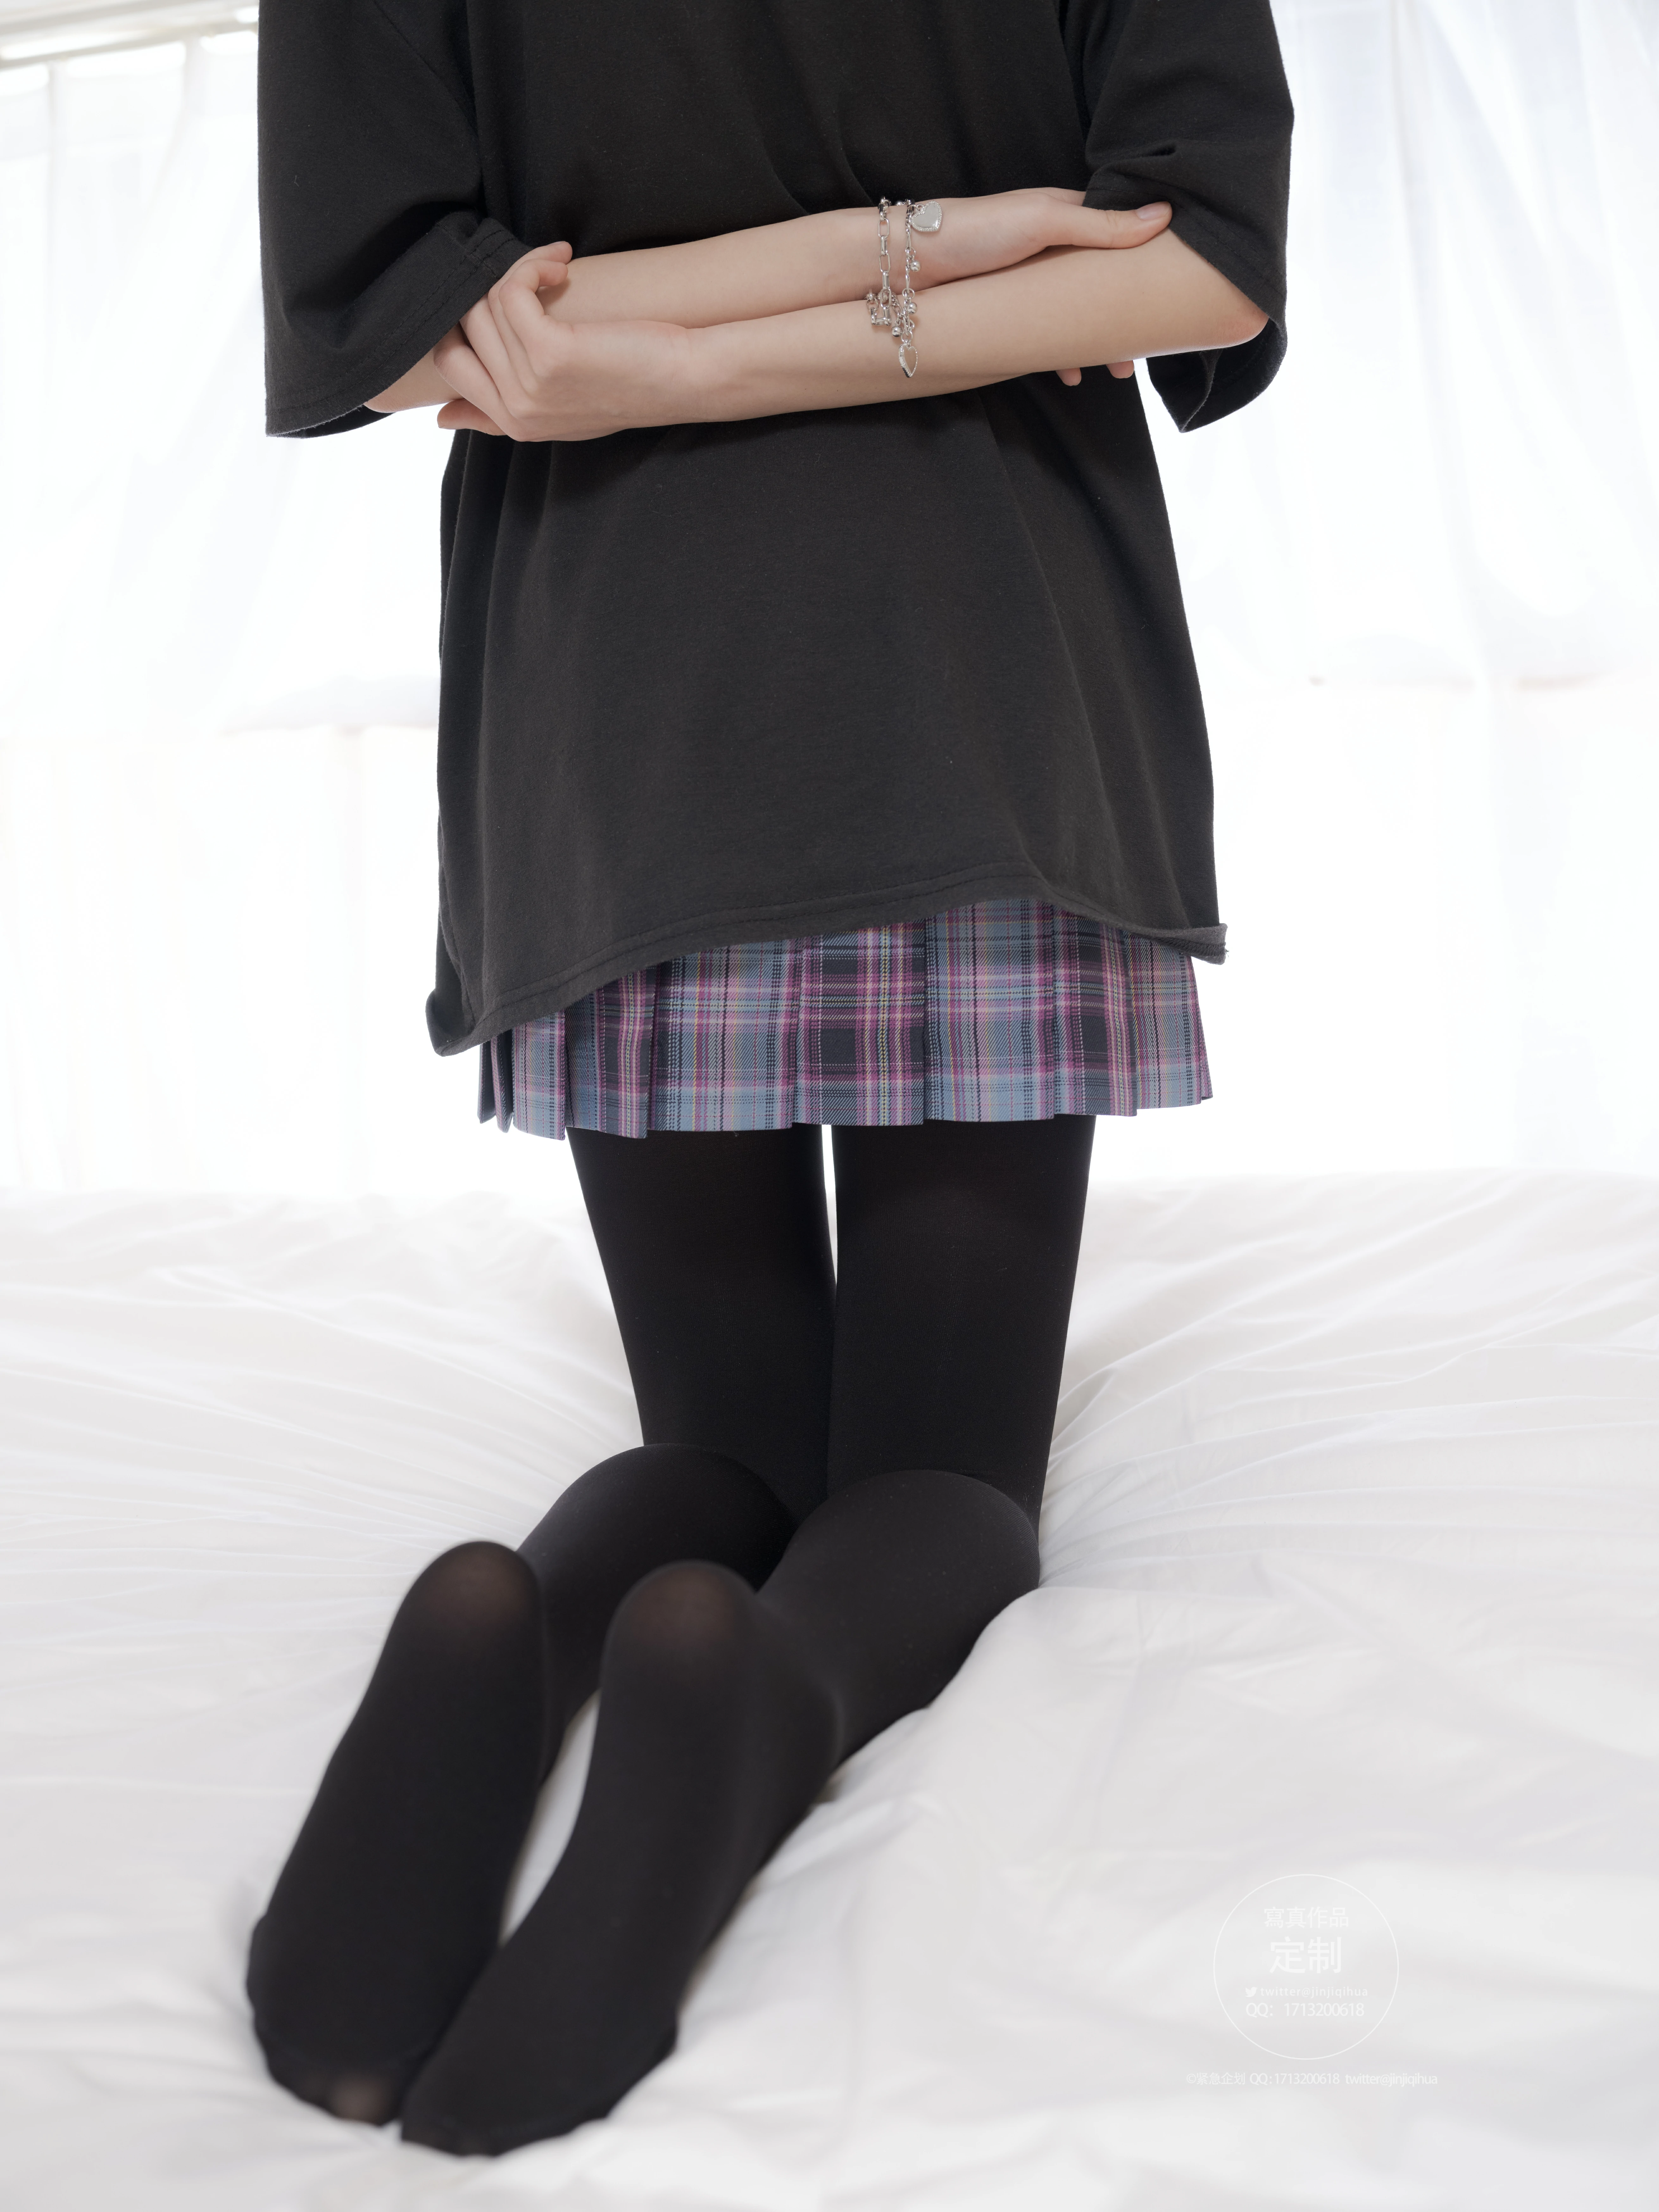 [紧急企划]Y-001 不露脸的少女萝莉 黑色JK制服与格子短裙加黑丝美腿性感私房写真集,0097